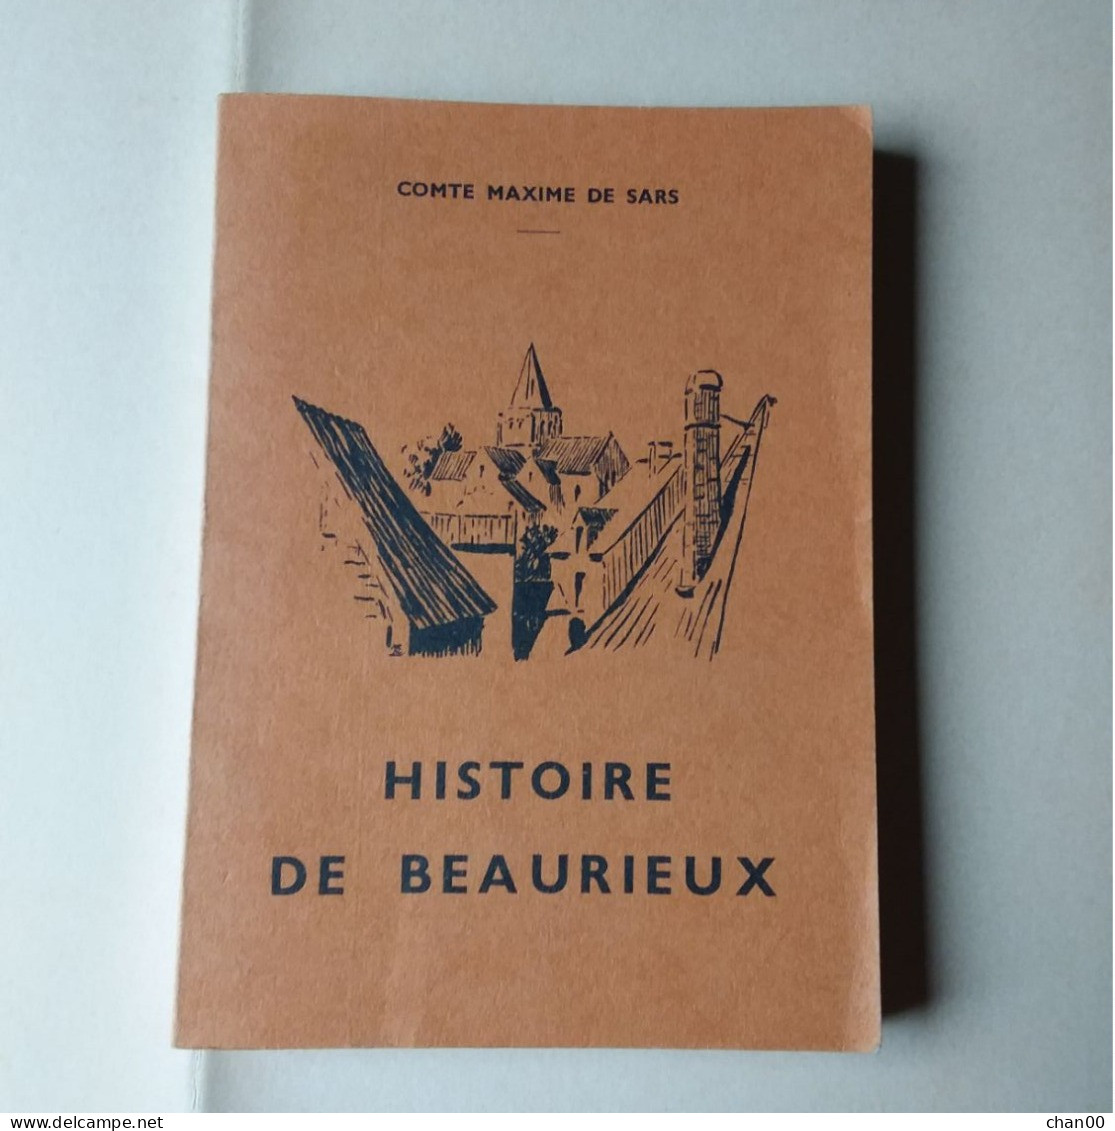 HISTOIRE DE BEAURIEUX (Comte Maxime De Sars) - Picardie - Nord-Pas-de-Calais